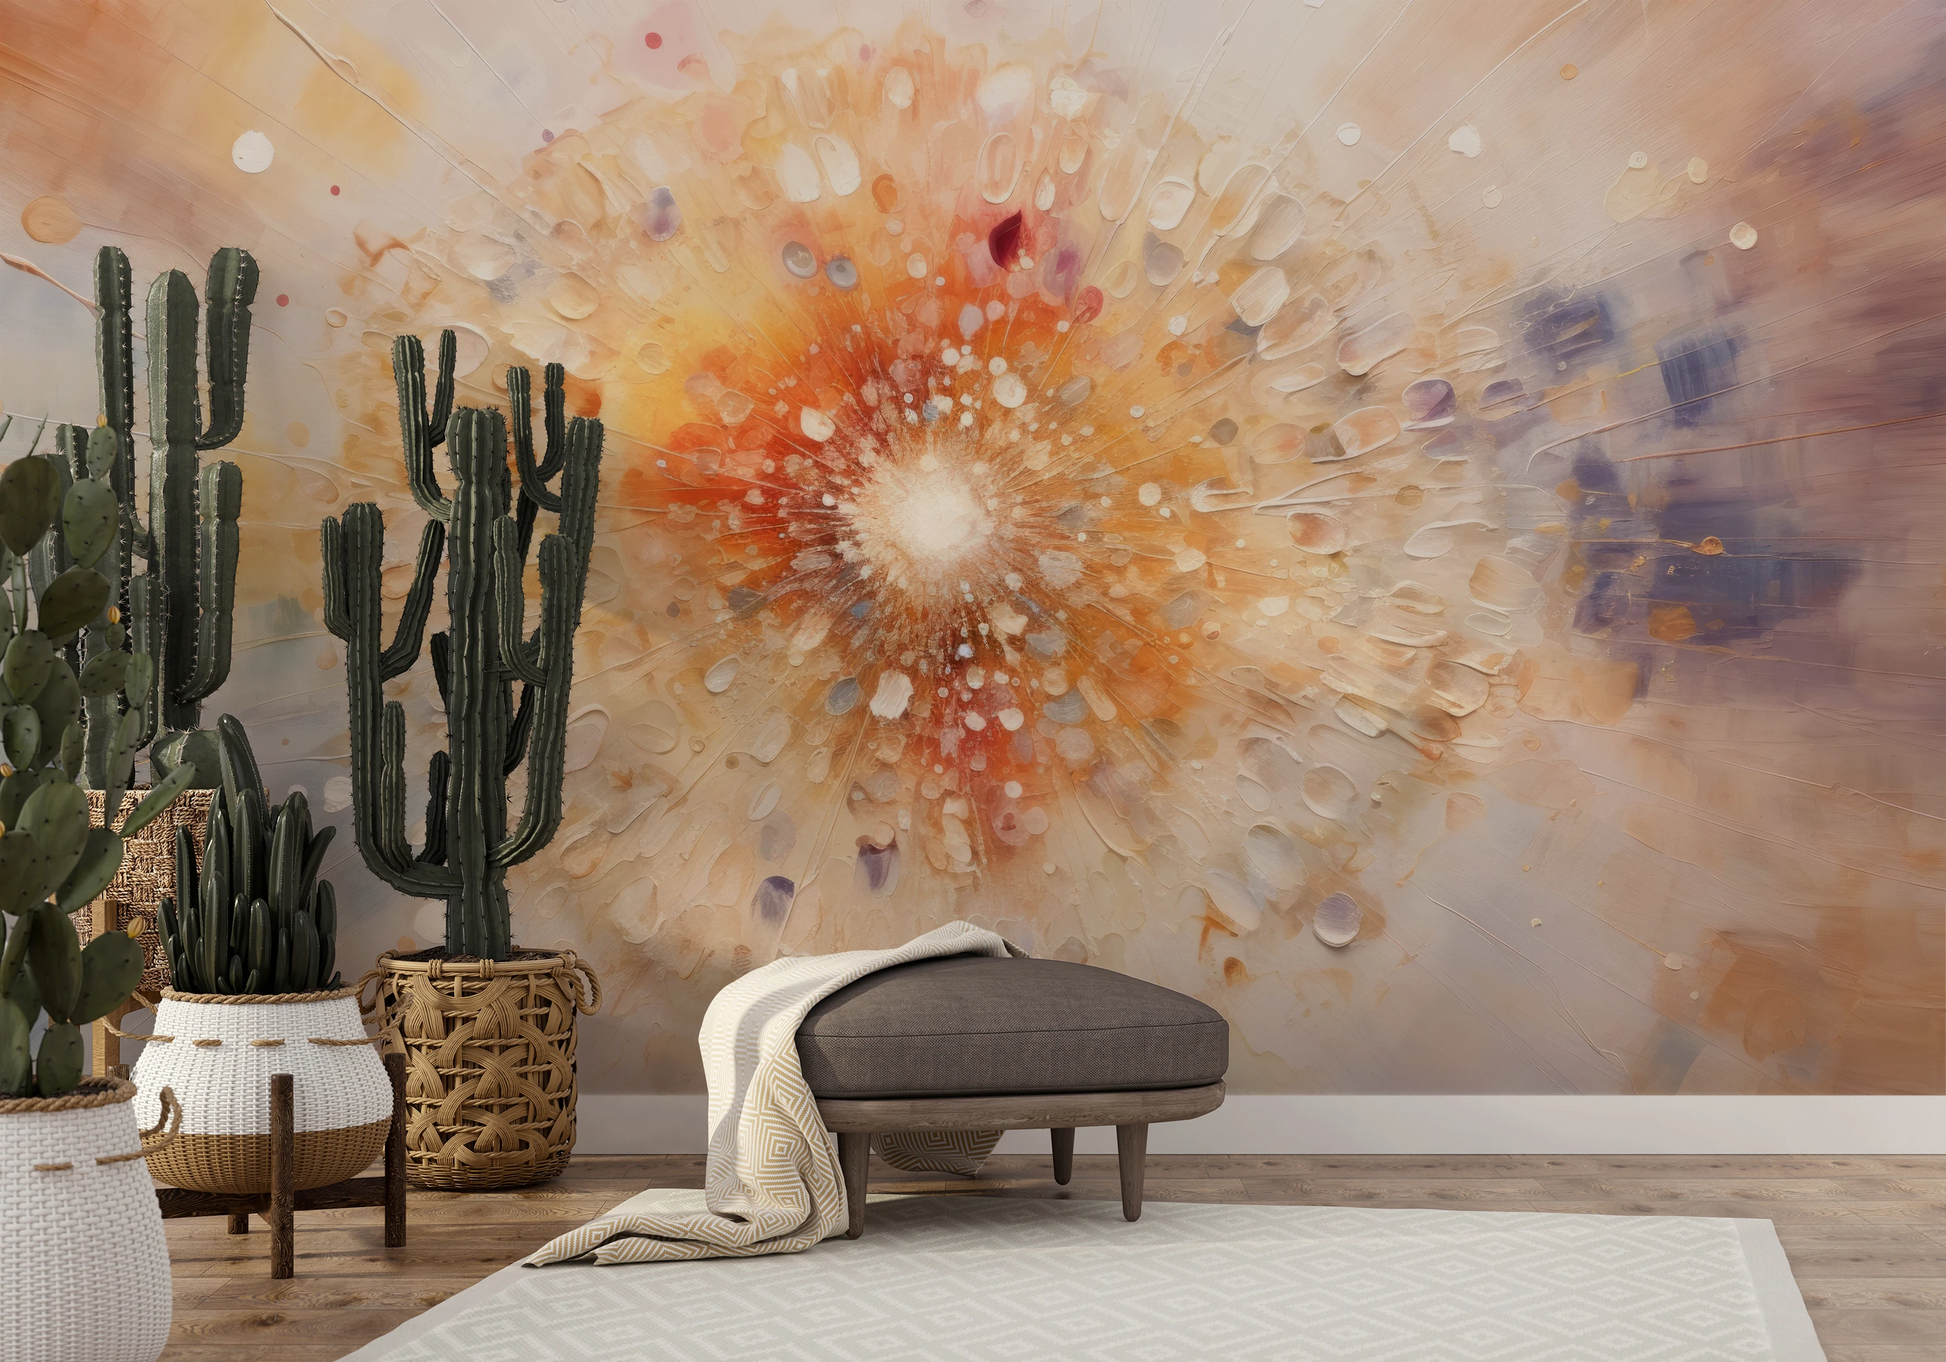 Fototapeta malowana o nazwie Desert Bloom pokazana w aranżacji wnętrza.